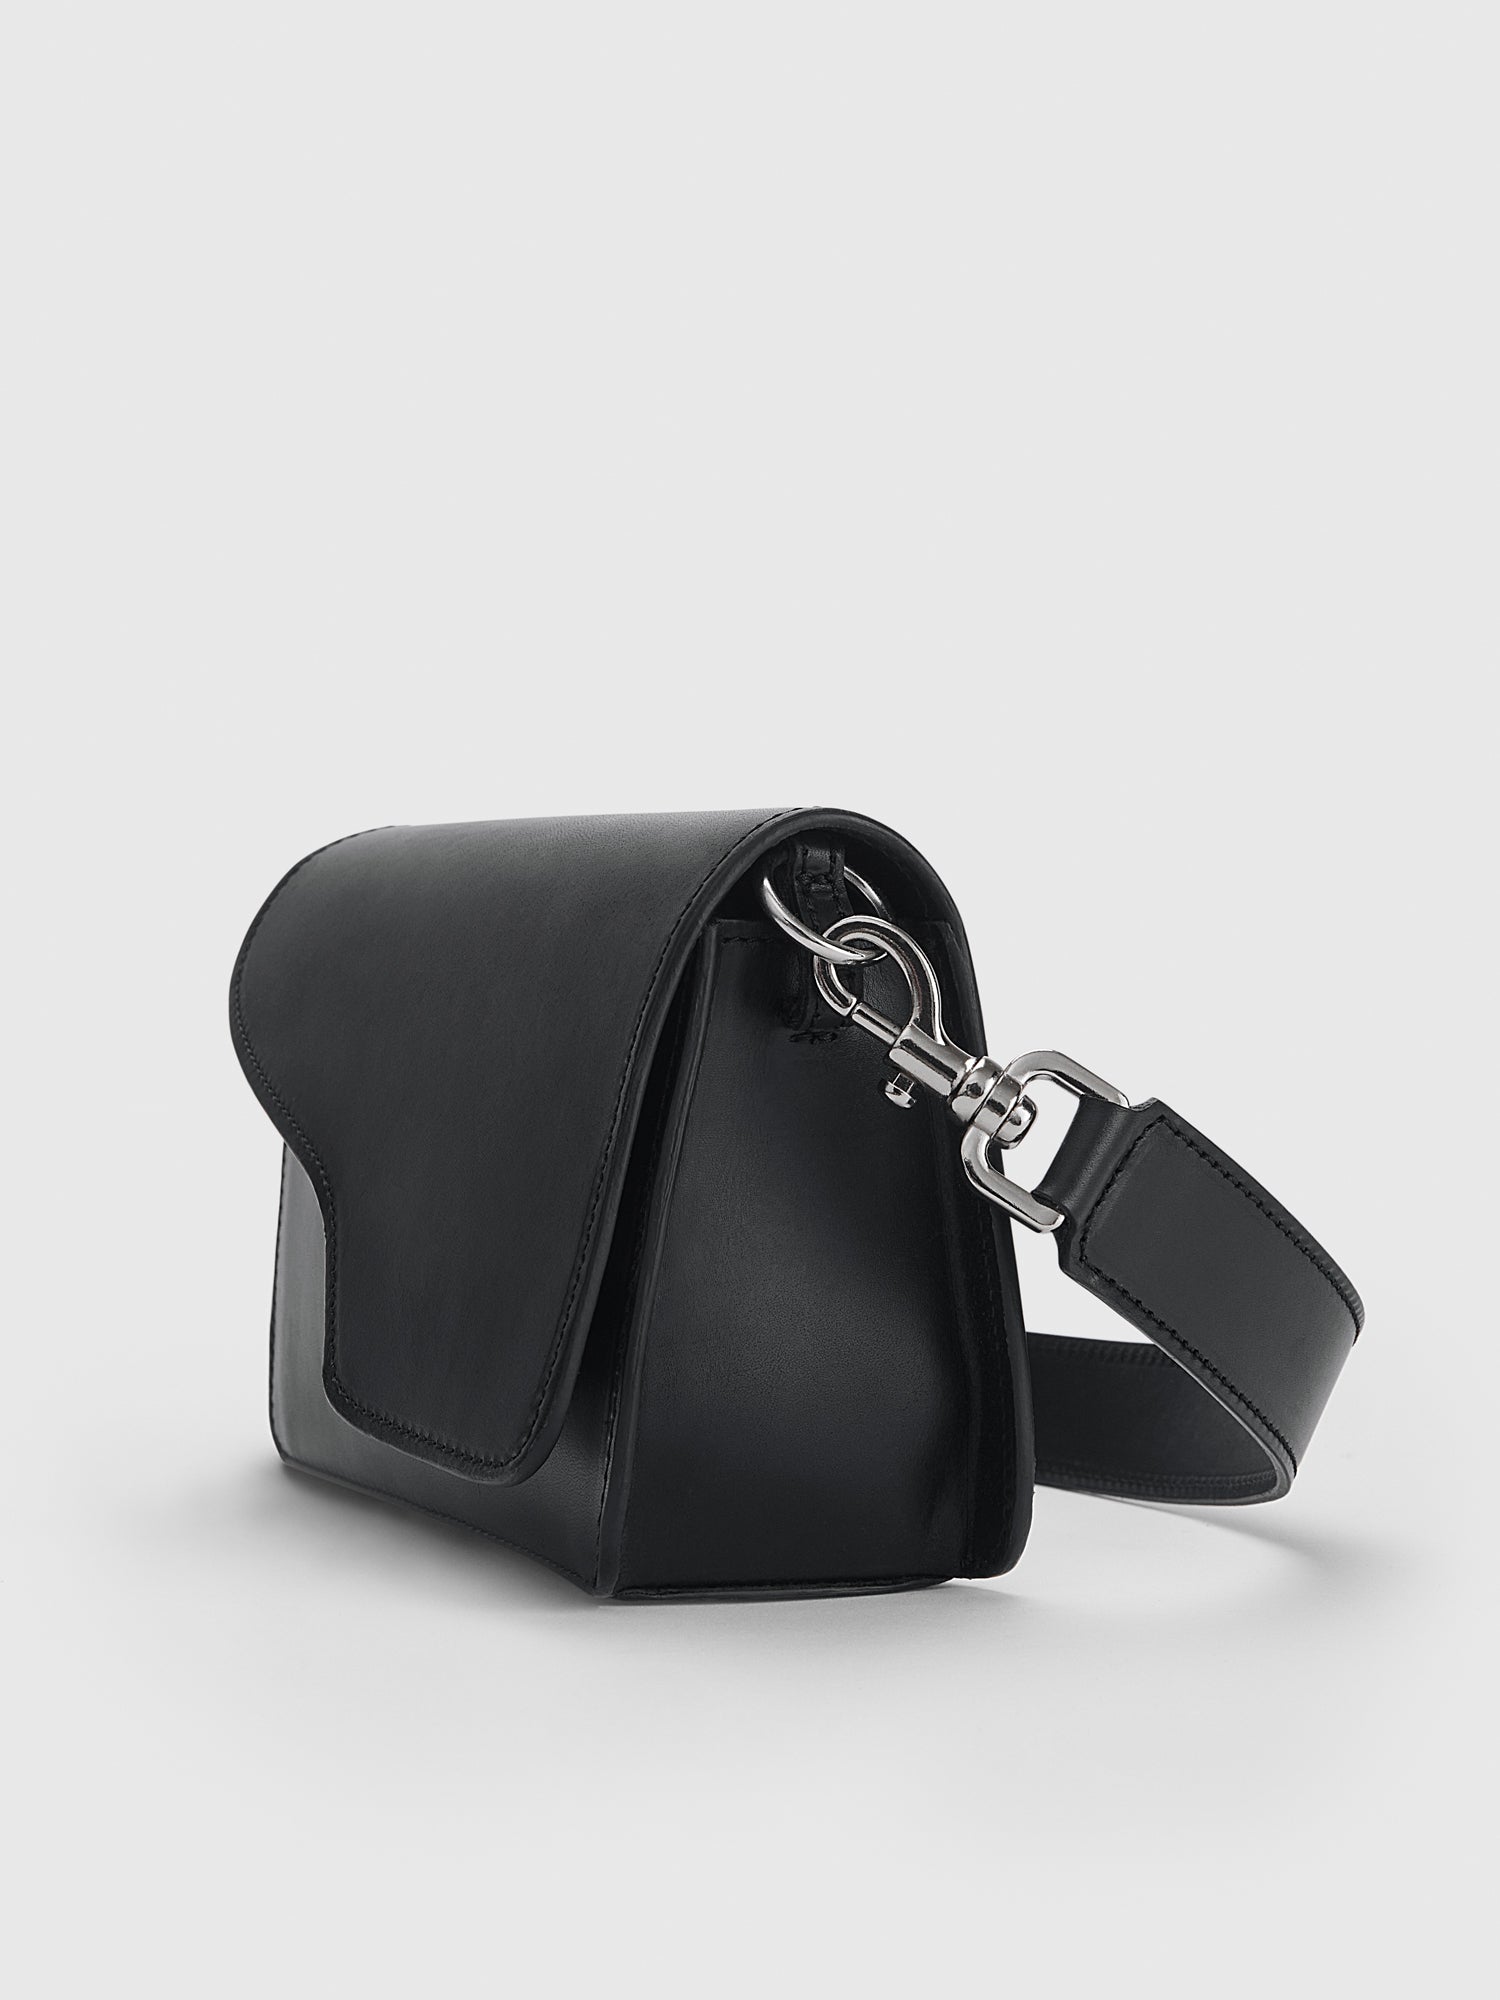 Corsina Black Leather Shoulder bag